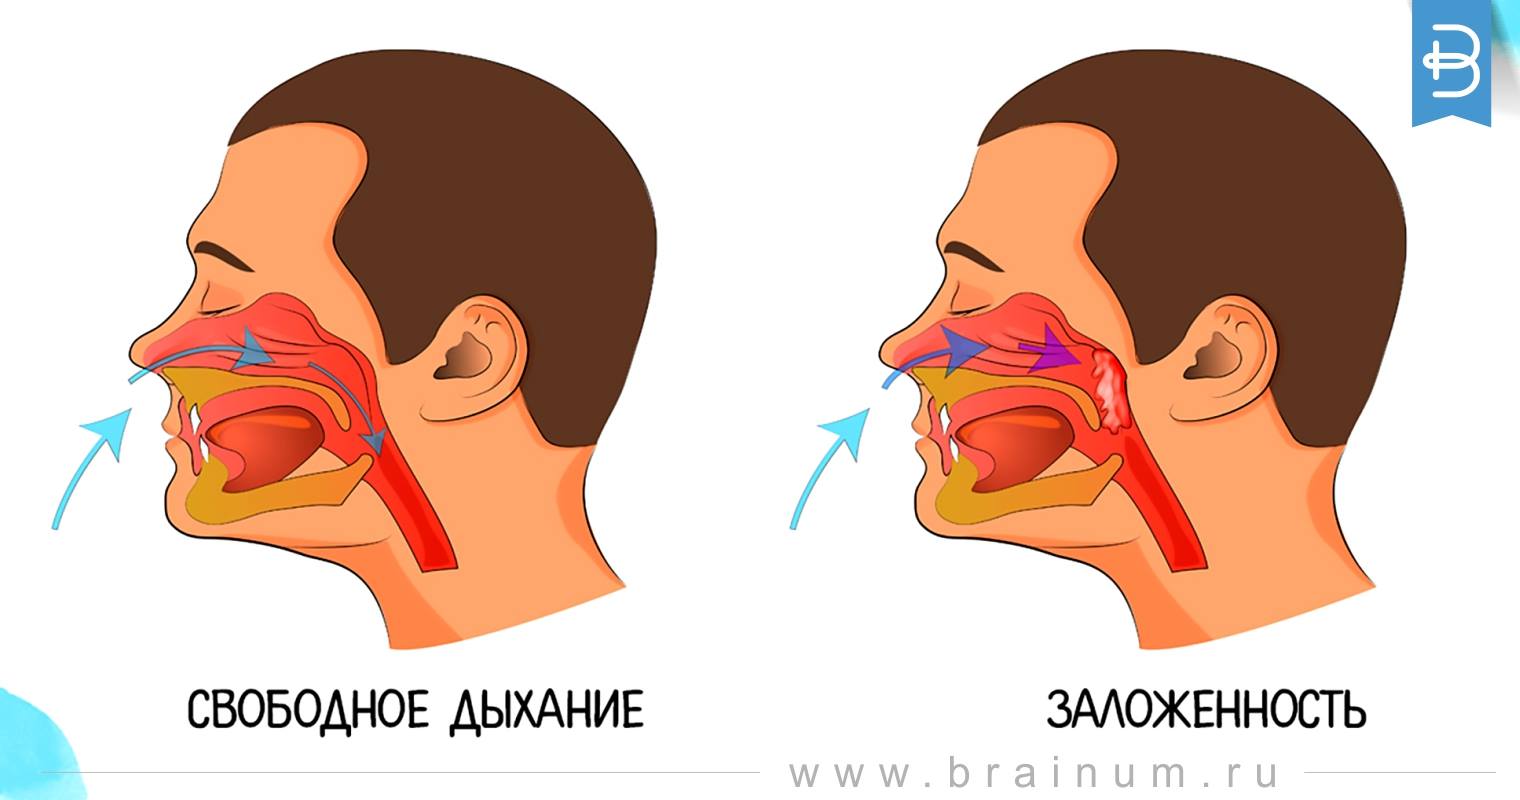 Через нос ртом делайте